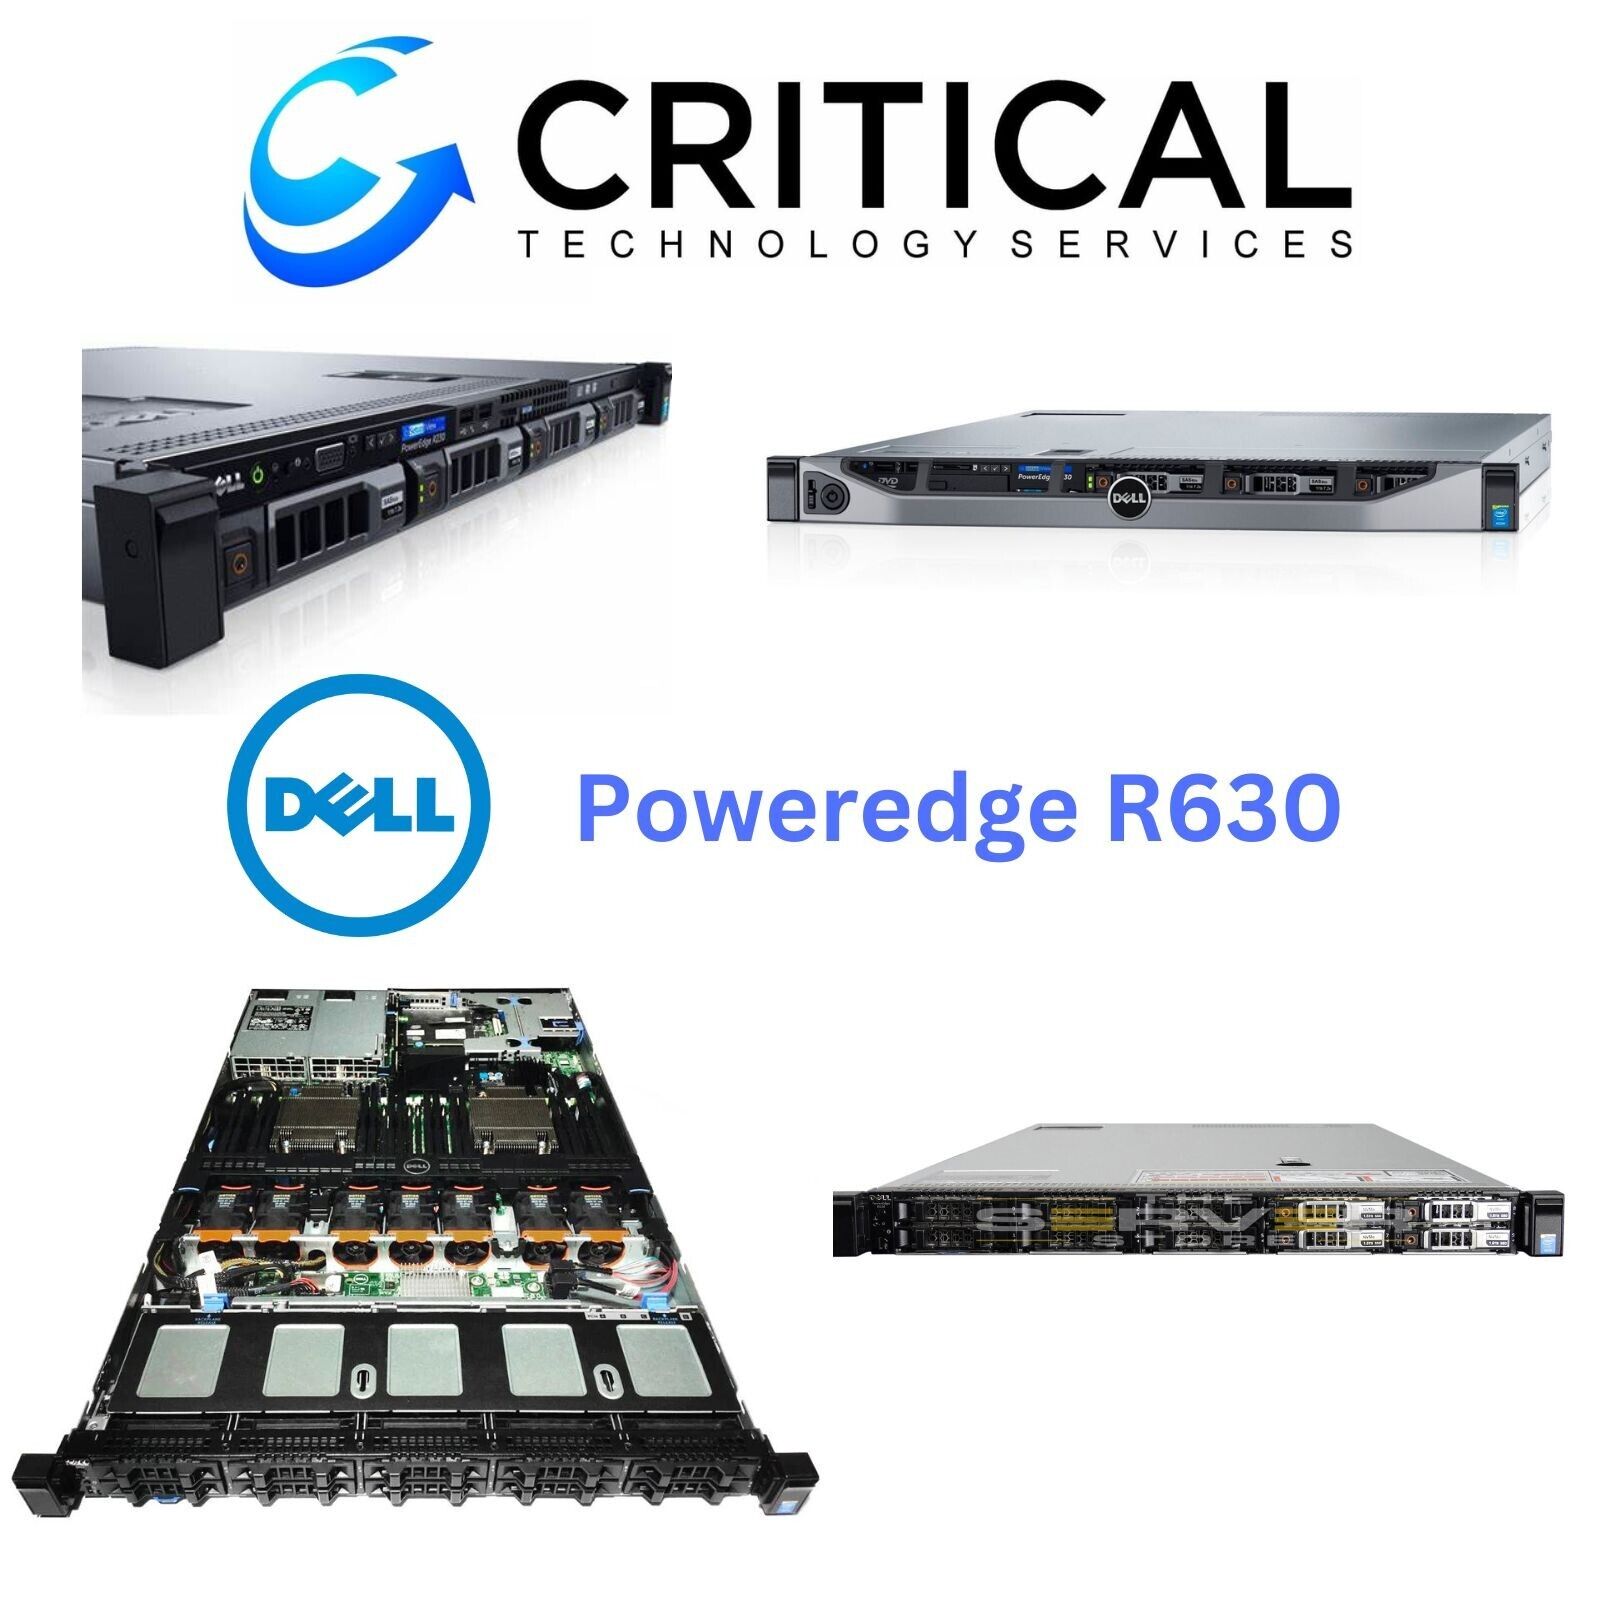 Dell PowerEdge R630 Server 10-Bay - 8Core 2.1Ghz - 16GB - H730 - 750W PSU